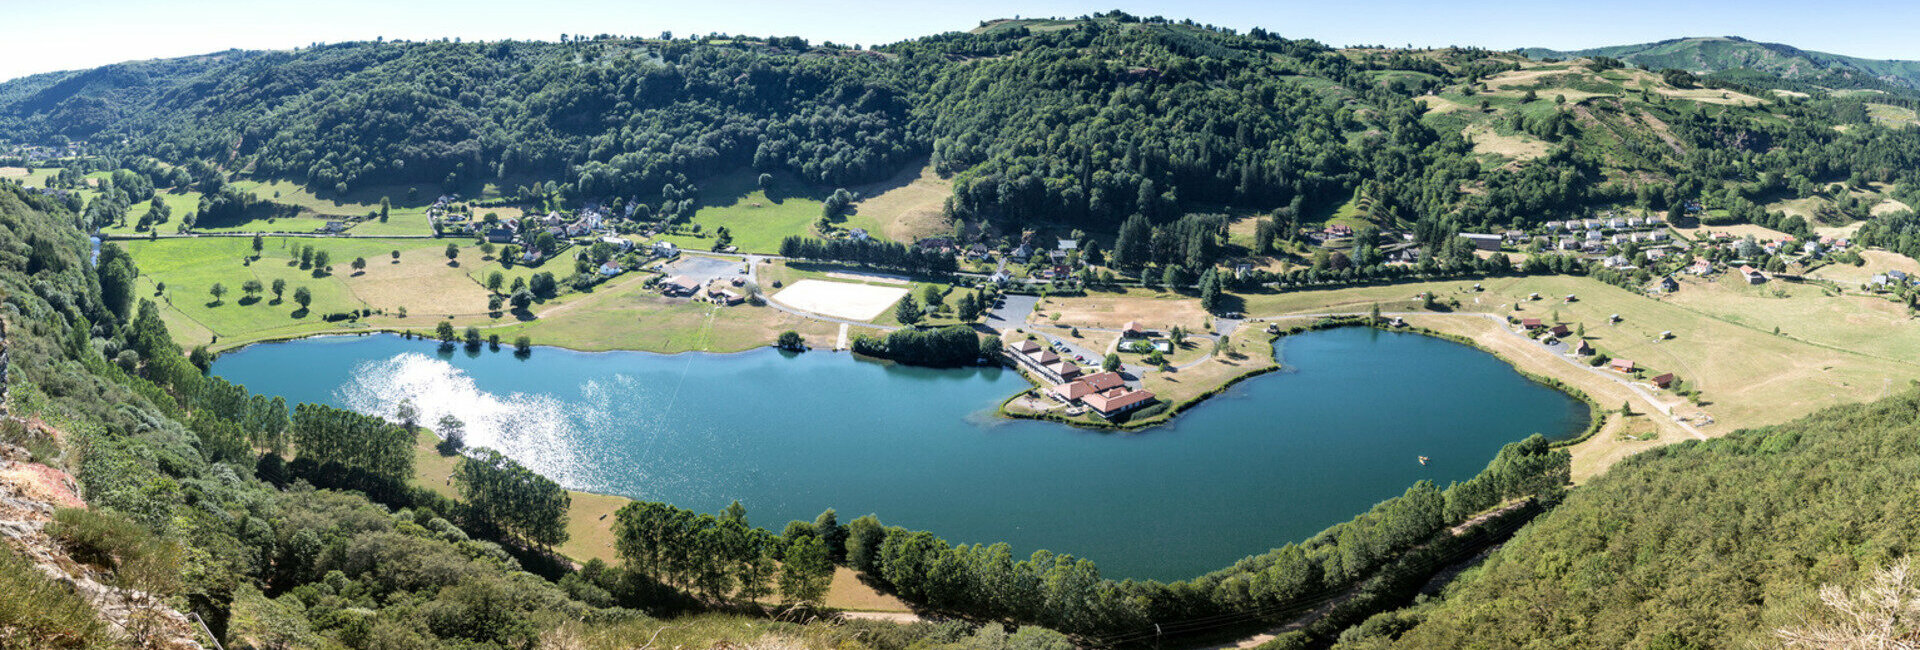 Randonnées VTT Moto - Le Lac des Graves - Cantal : Hôtel, restaurant, multi activités...